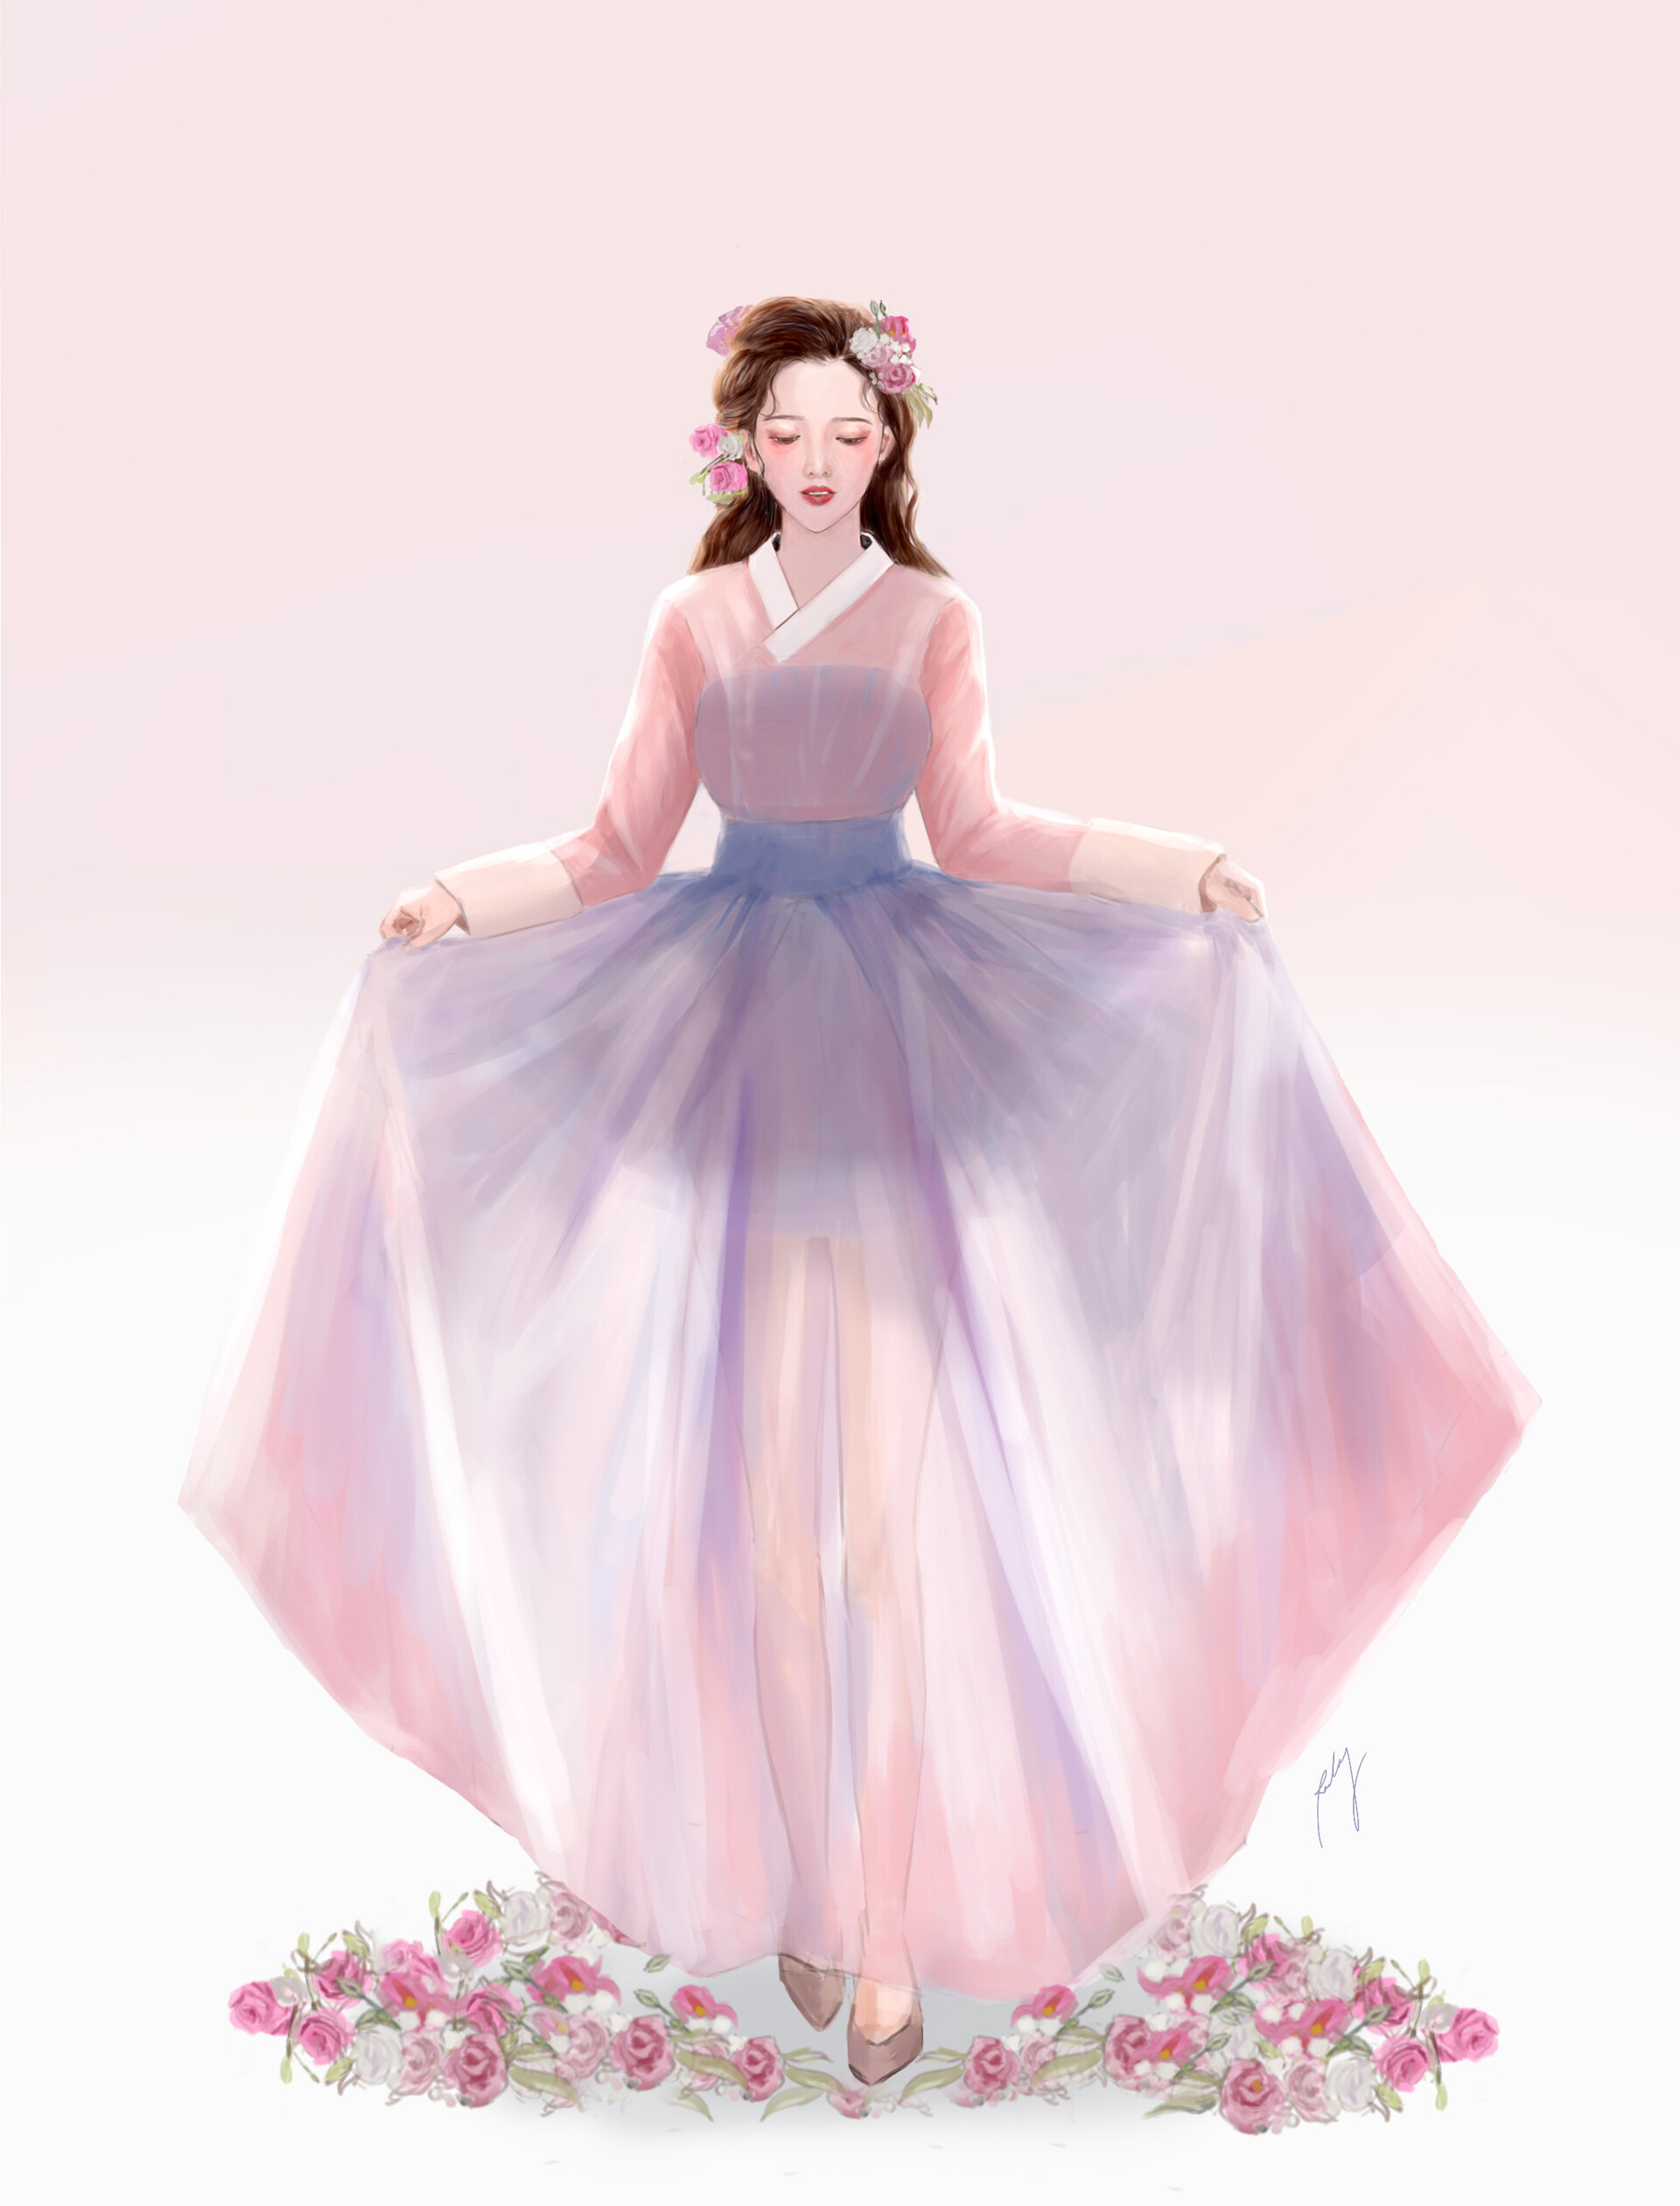 ArtStation - a girl in hanbok